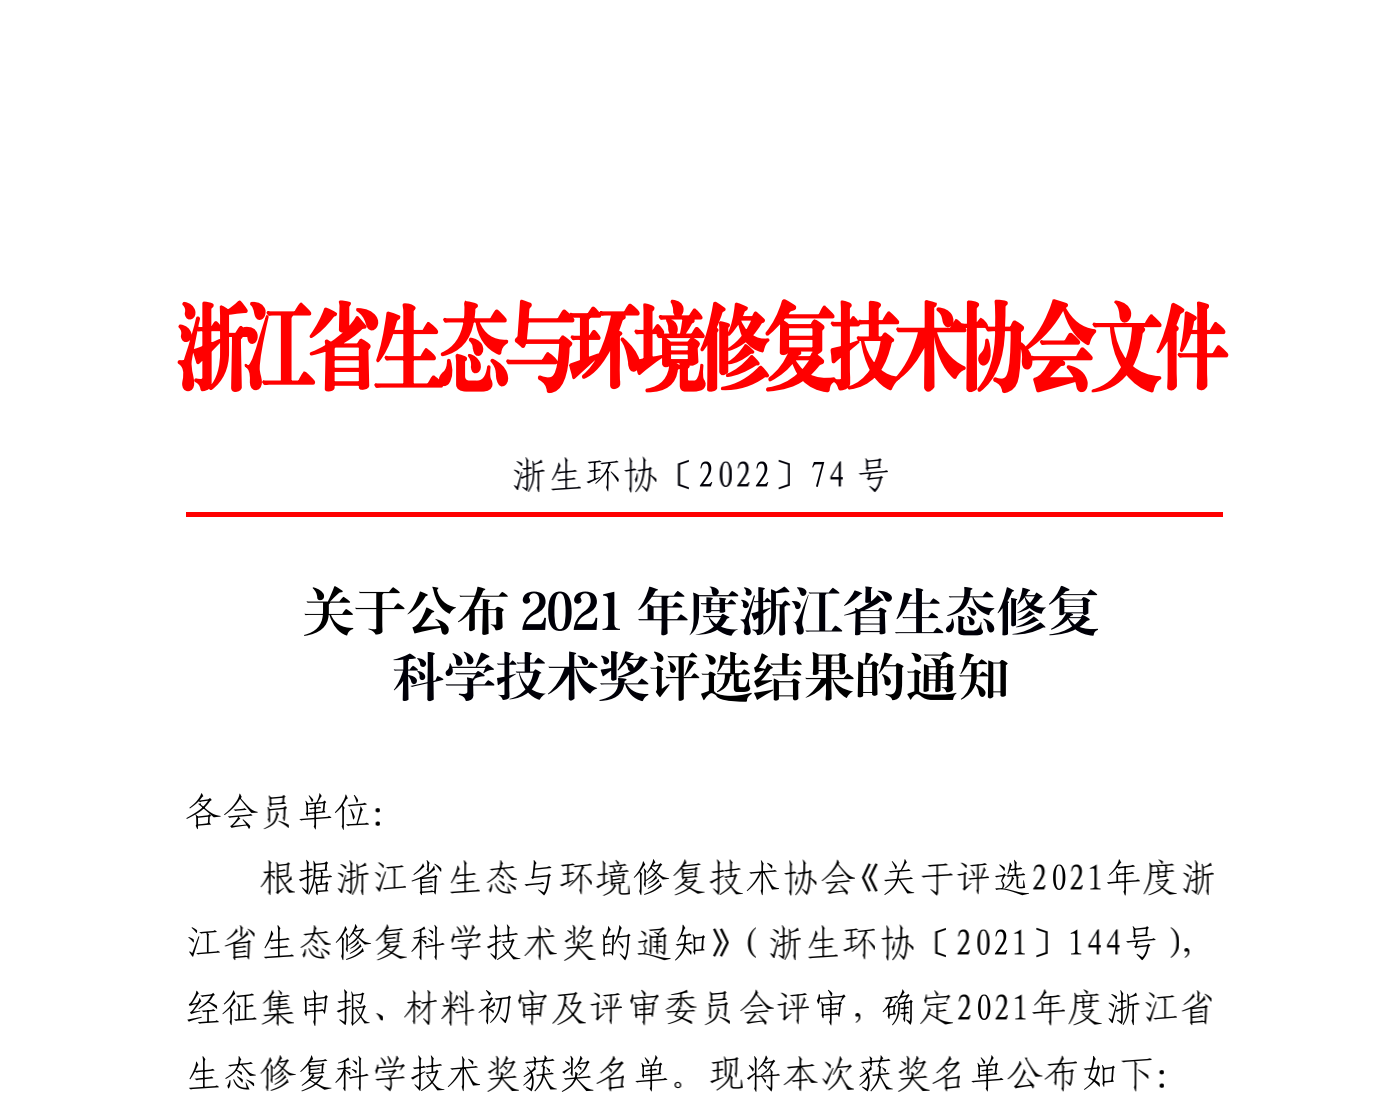 2022-74_关于2021年度浙江省生态修复科学技术奖评选结果公示的通知_v3_扫描_00.png